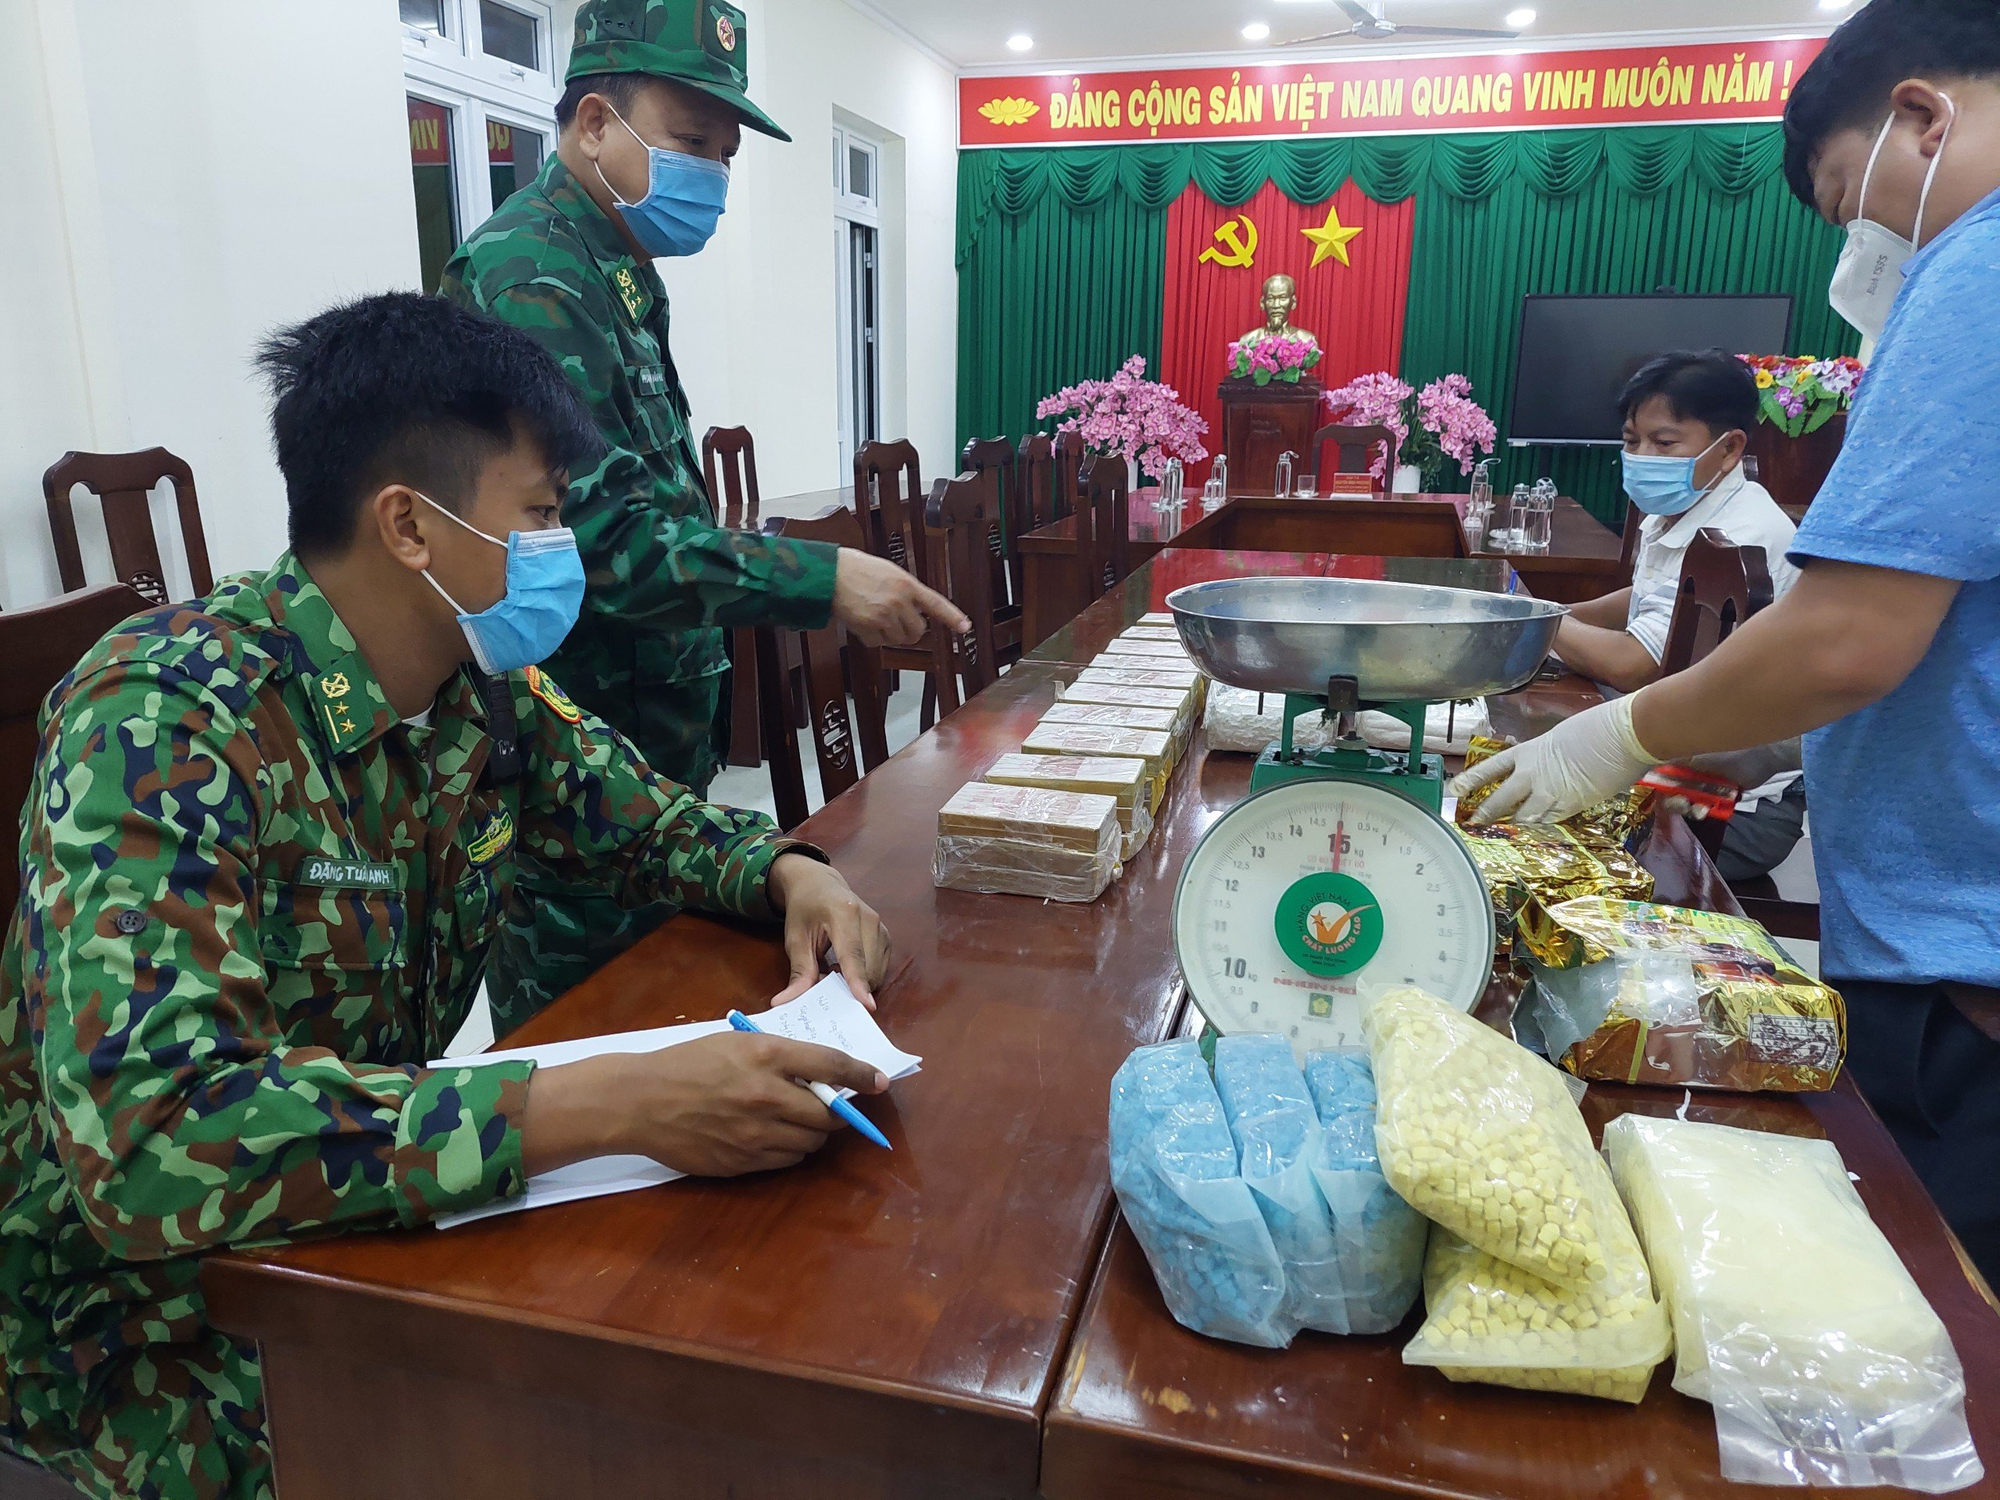 Kiểm tra xe chở xoài, phát hiện 24kg ma túy từ Campuchia vào Việt Nam - Ảnh 2.